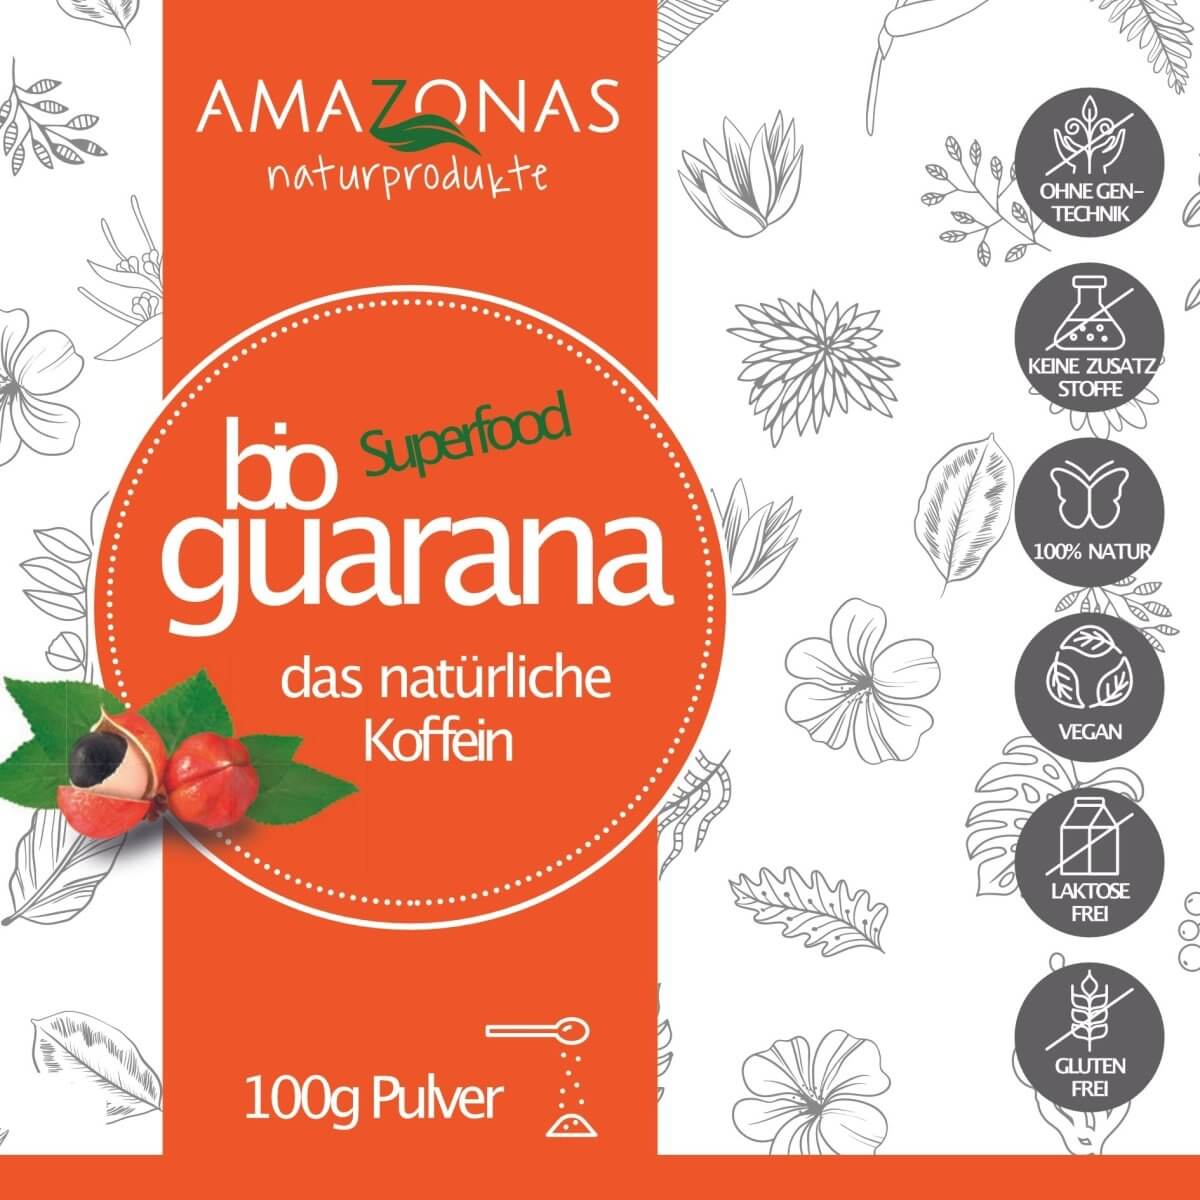 BIO Guarana Pulver 100g - Amazonas Naturprodukte Handels GmbH